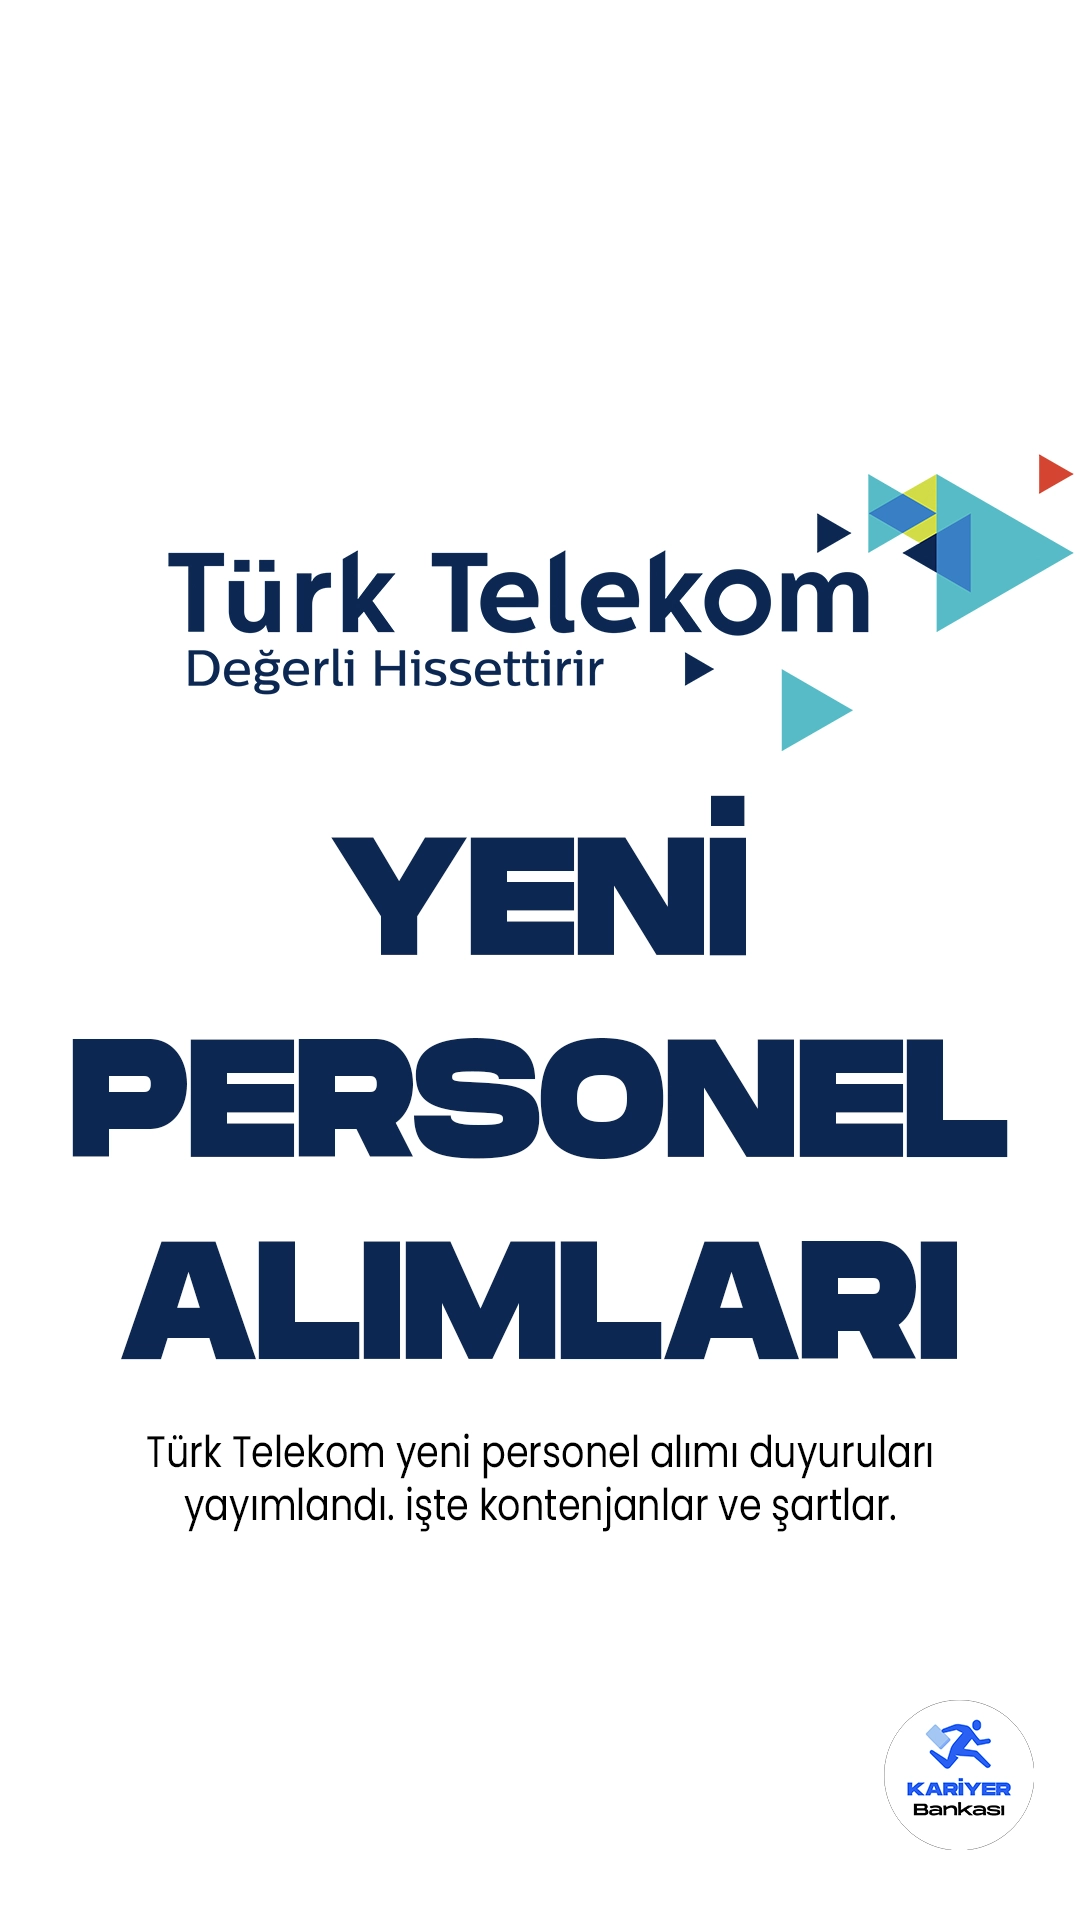 Türk Telekom personel alımı duyuruları yayımlandı. Türk Telekom resmi sayfasından yayımlanan duyurulara göre, birçok farklı unvanda personel alımı yapılacağı kaydedildi. Başvuruları 14 Haziran itibariyle başladı. Başvuru yapacak adayların belirtilen şartları sağlaması gerekmektedir. Başvuru işlemleri 14 Temmuz 2023 tarihine kadar alınacak.